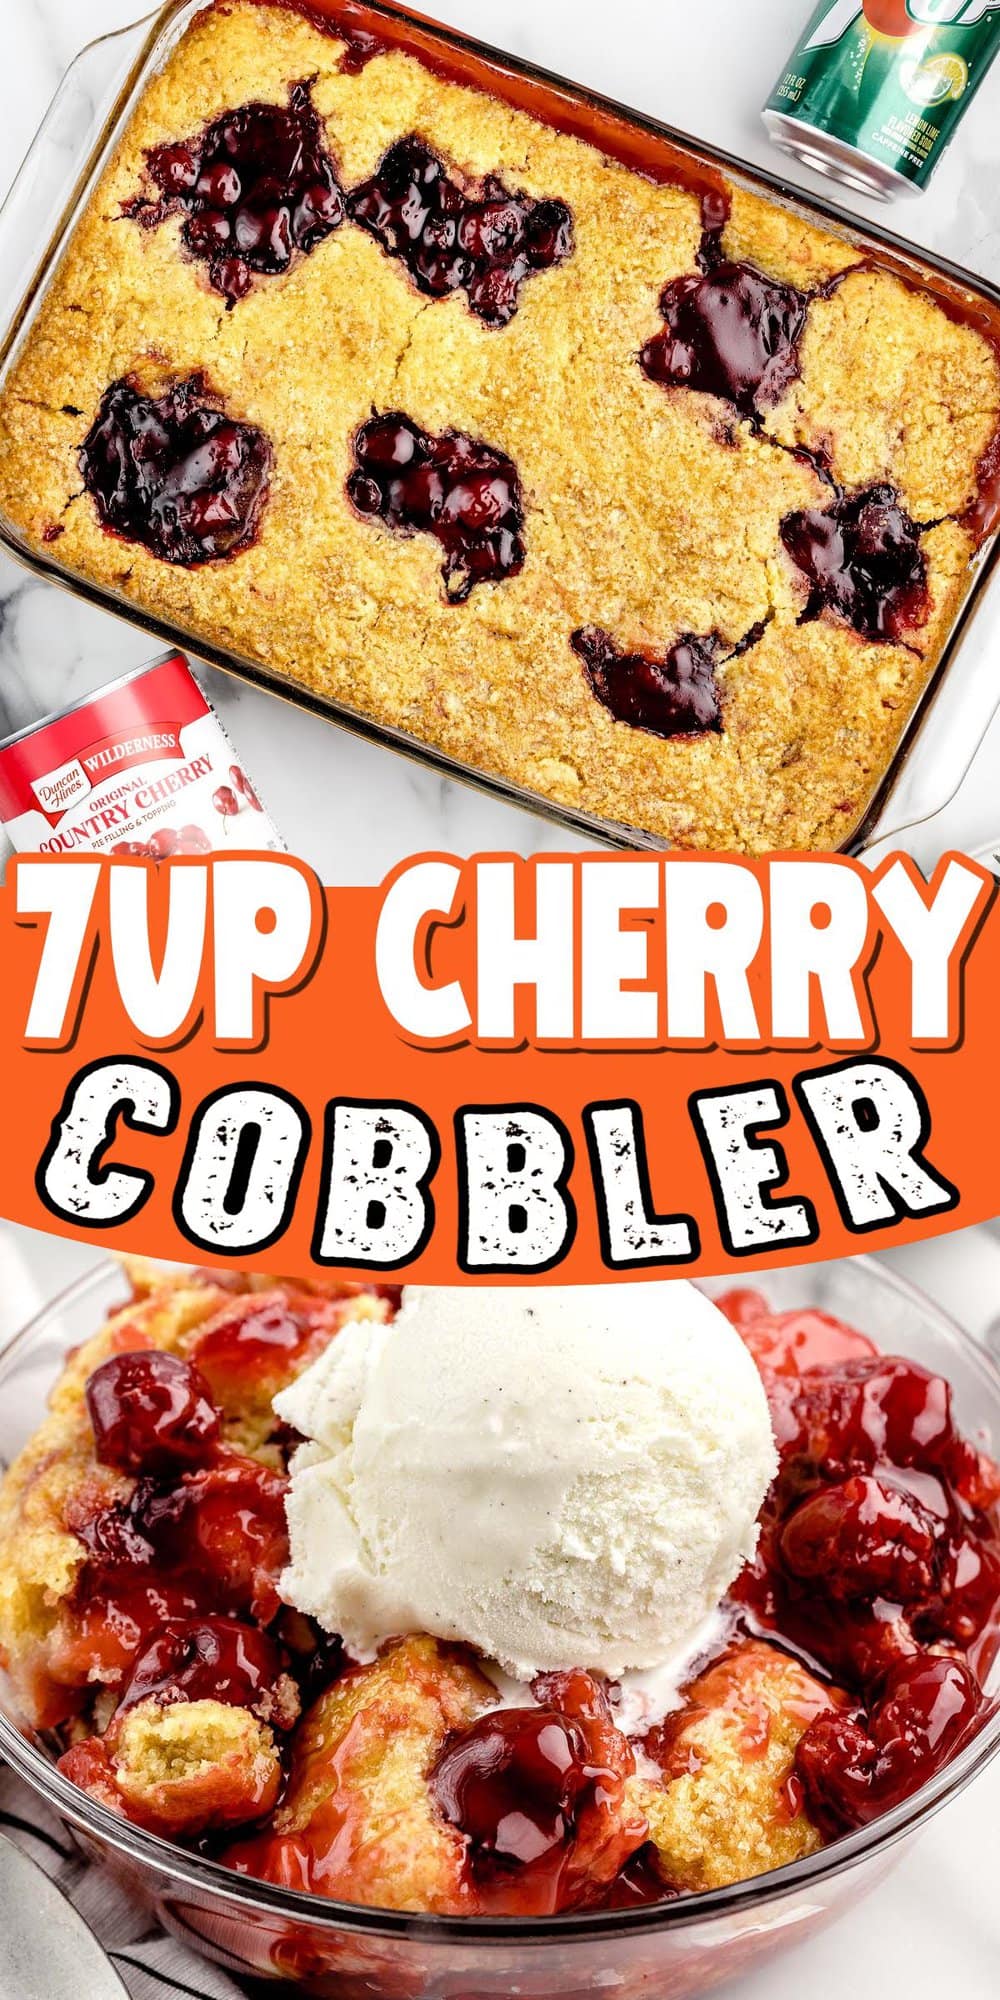 7 Up Cherry Cobbler pinterest